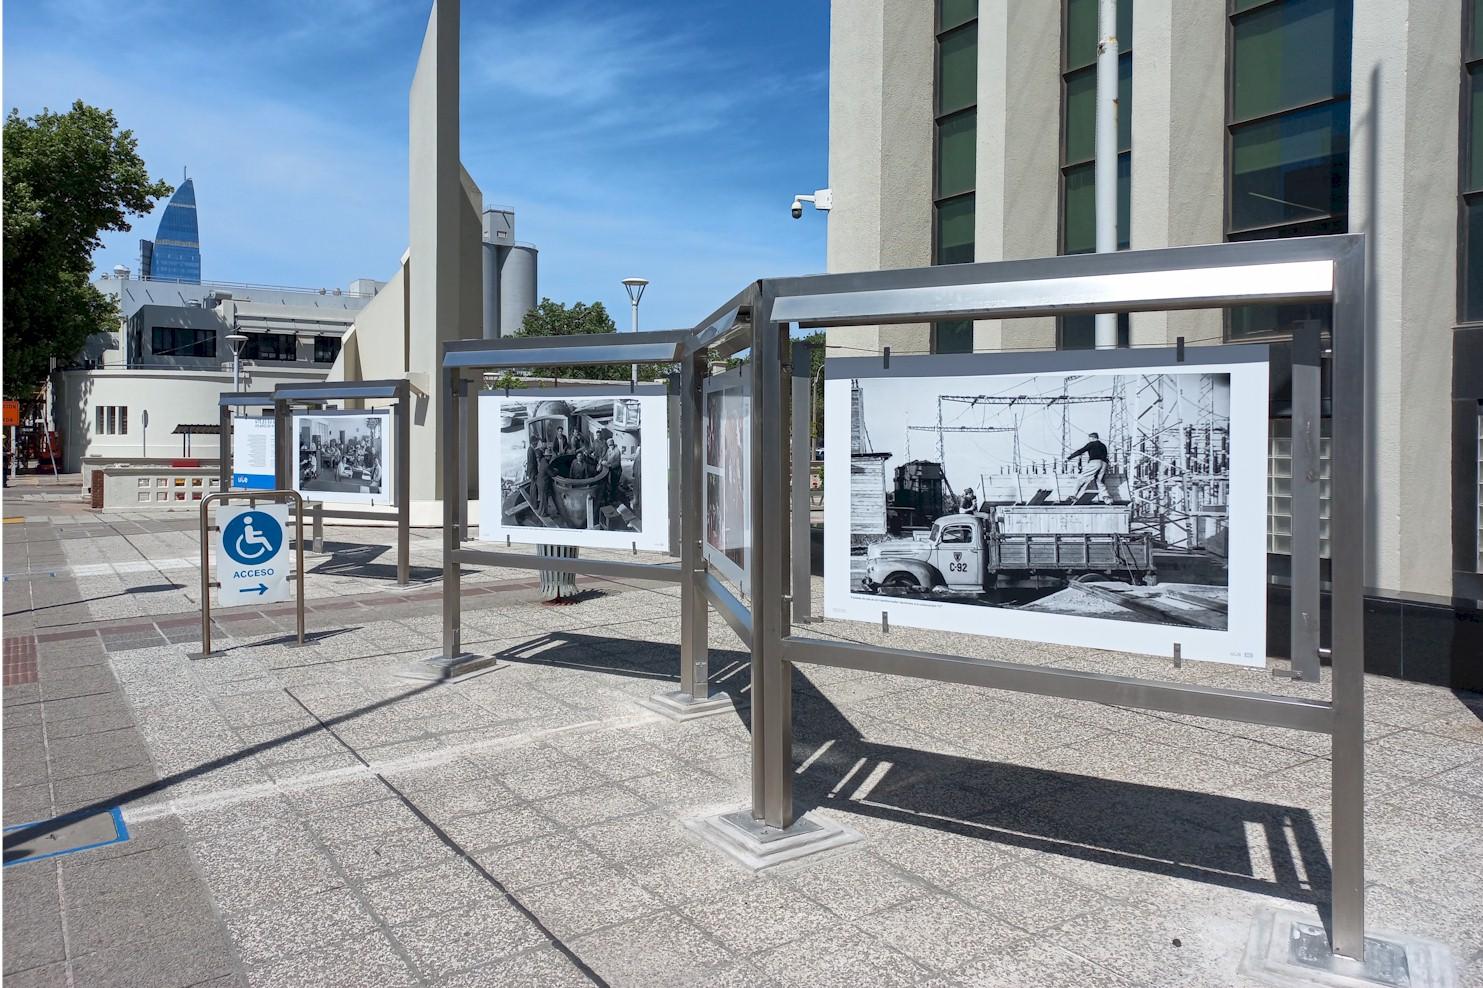 Muestra fotográfica de la historia de UTE al frente del Palacio de la Luz